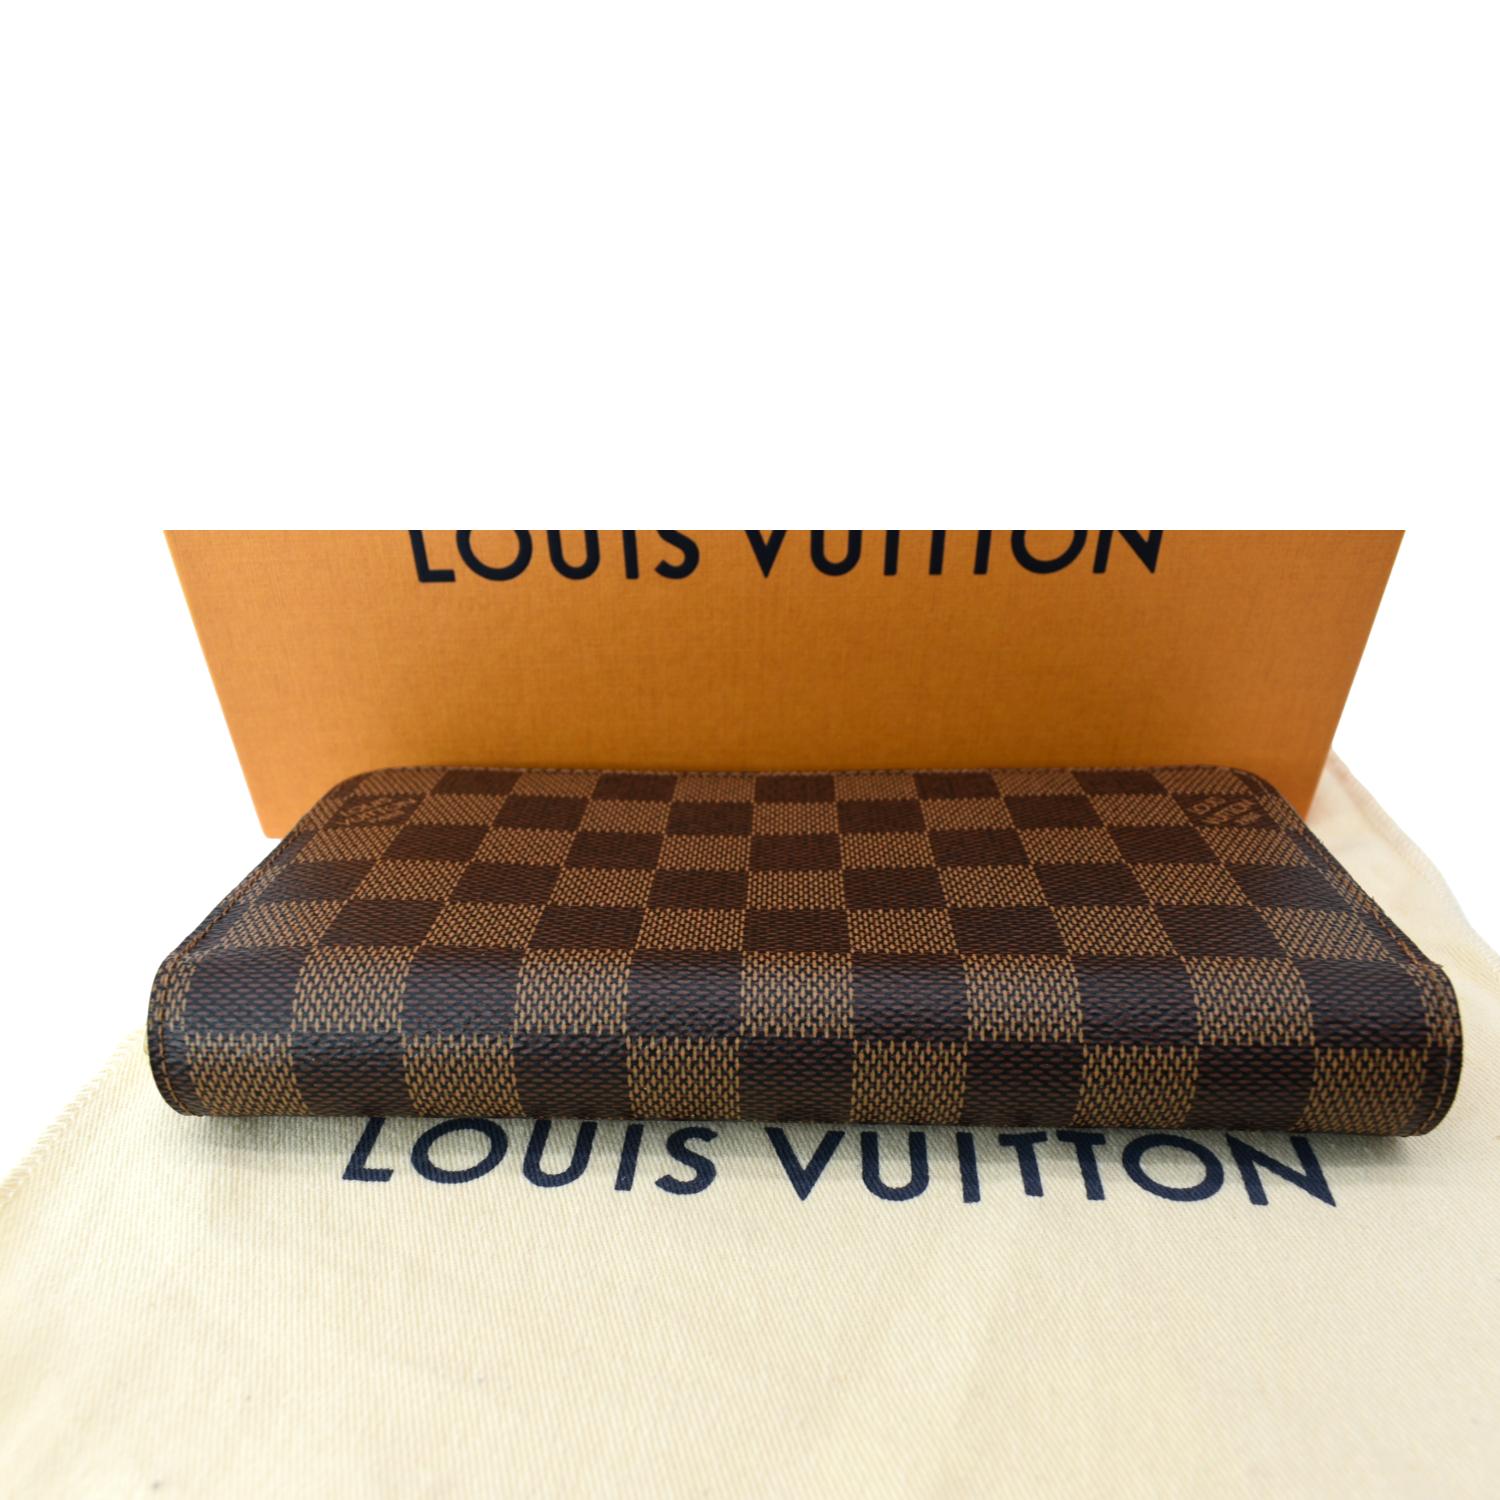 Louis Vuitton Azur Speedy 35 and XL Azur Wallet Zippy Set - A